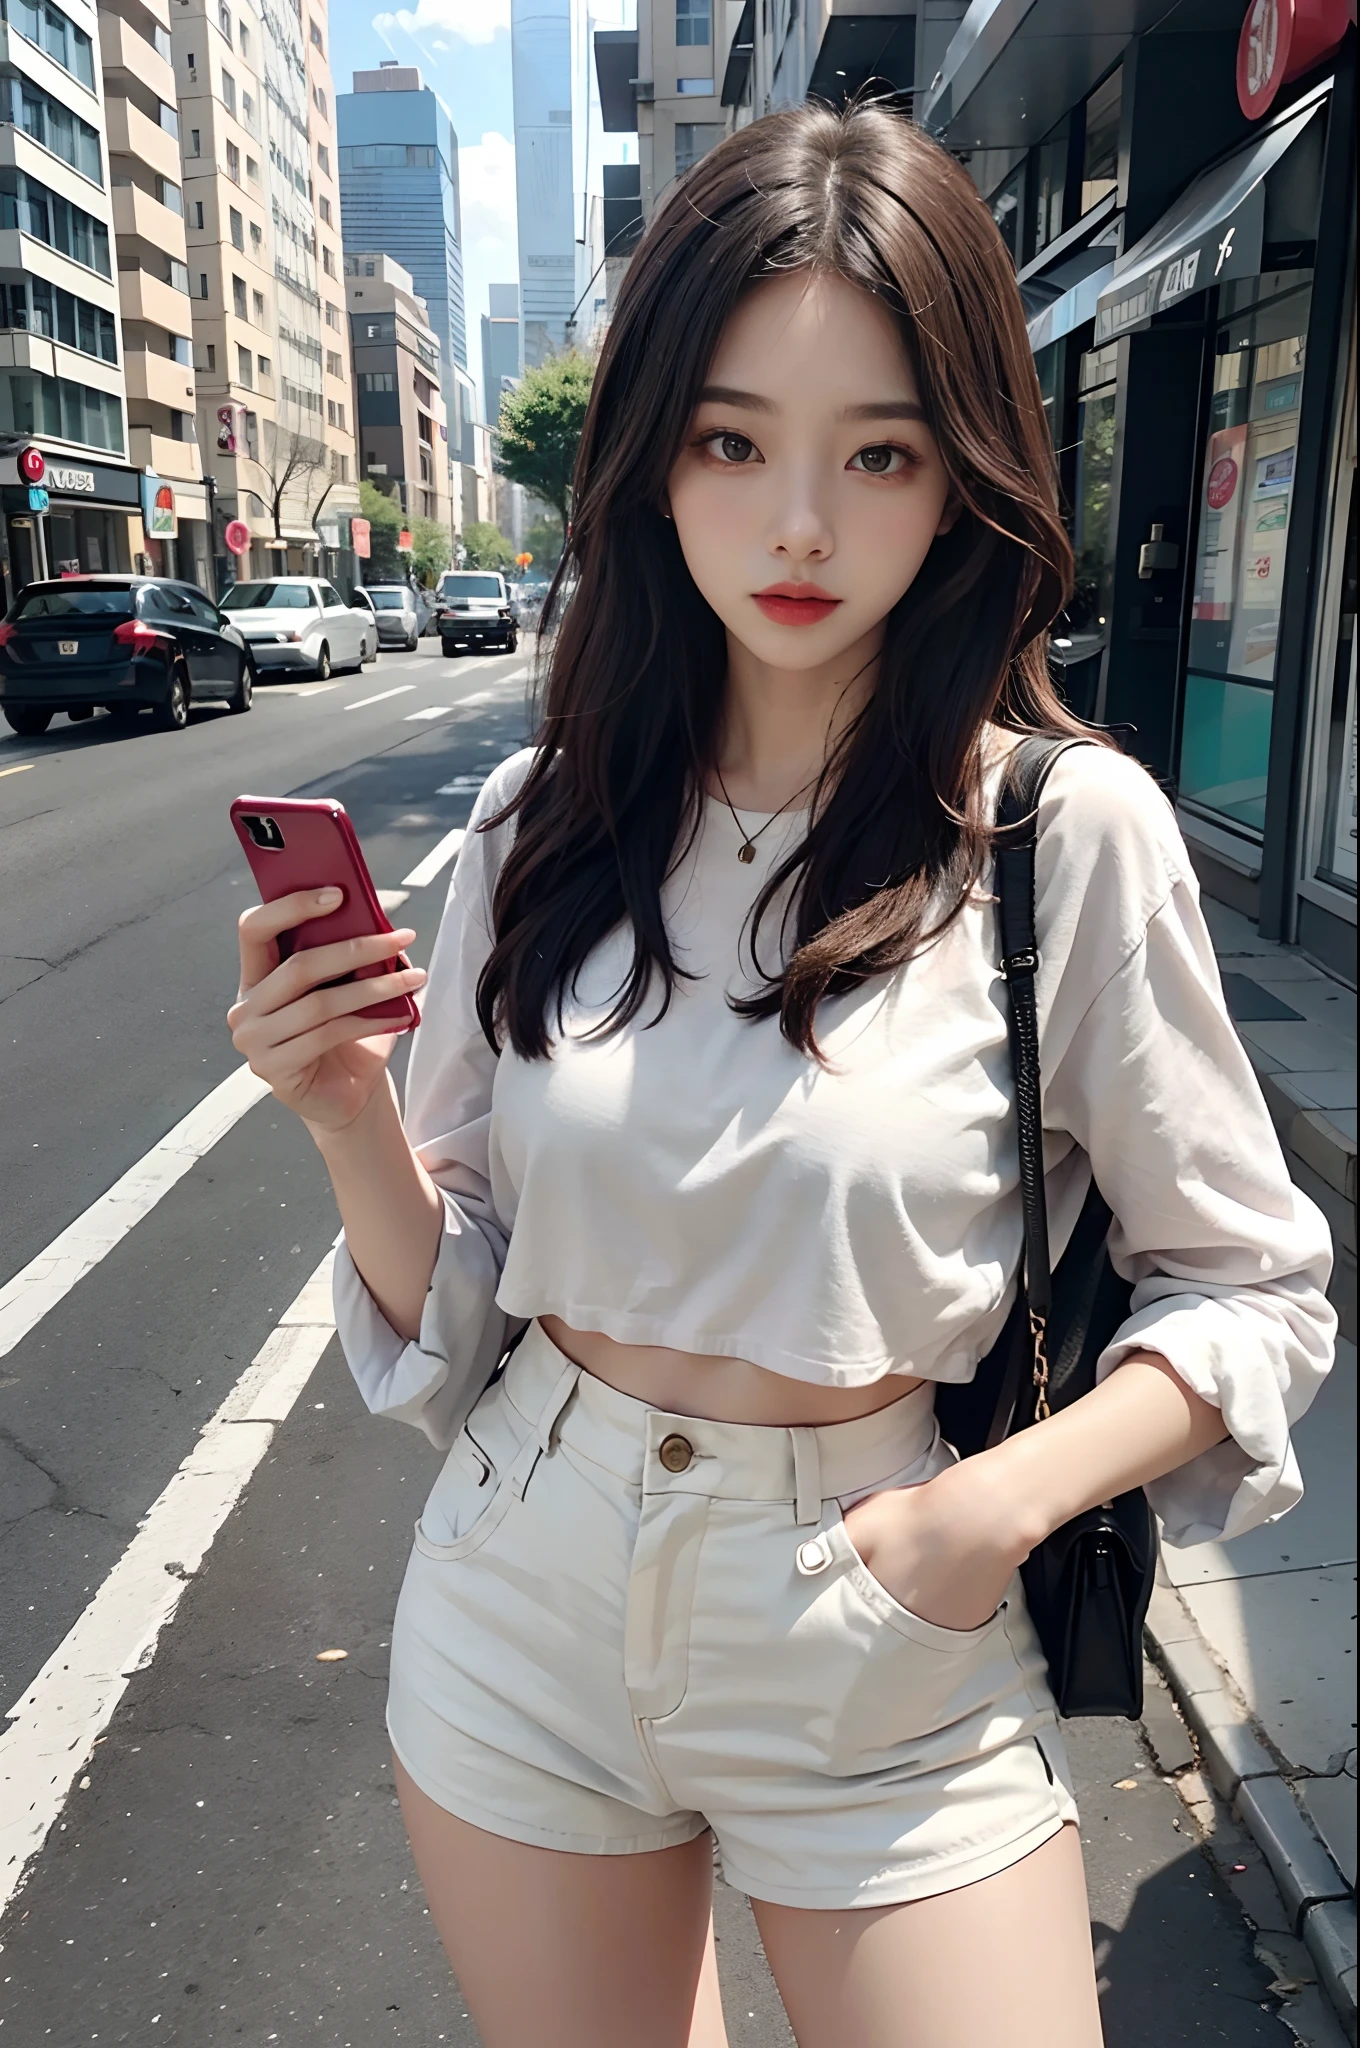 Belle femme, jouer avec son téléphone portable au milieu de la rue, vêtements courts